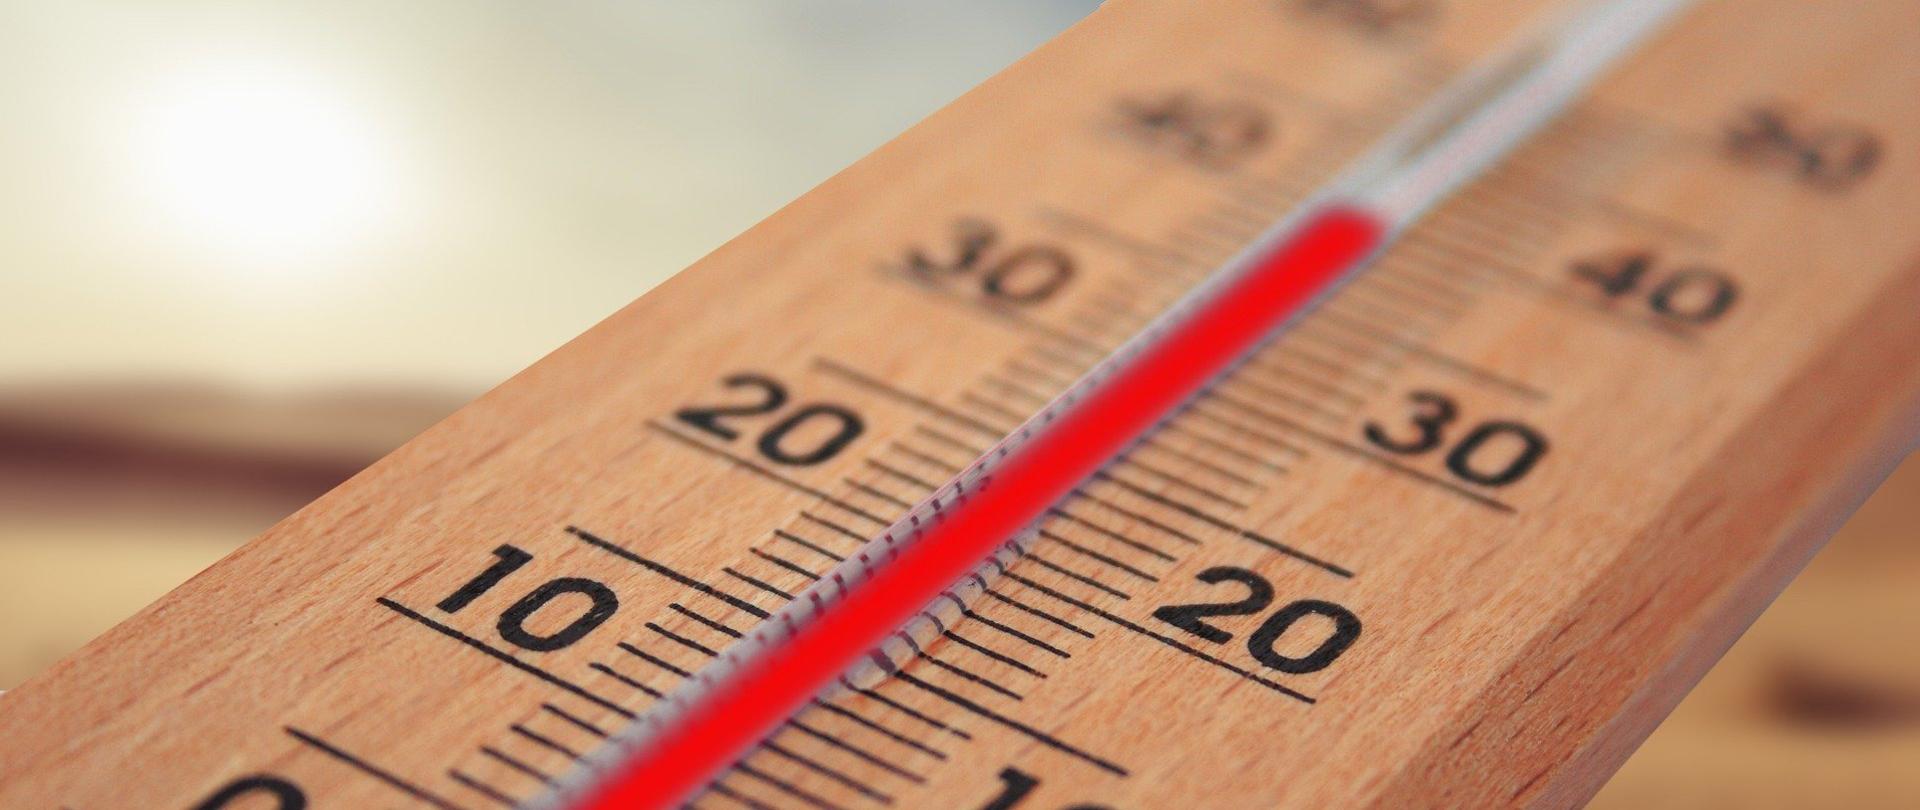 Na zdjęciu termometr ze wskazaniem temperatury ok 40 stopni Celcjusza